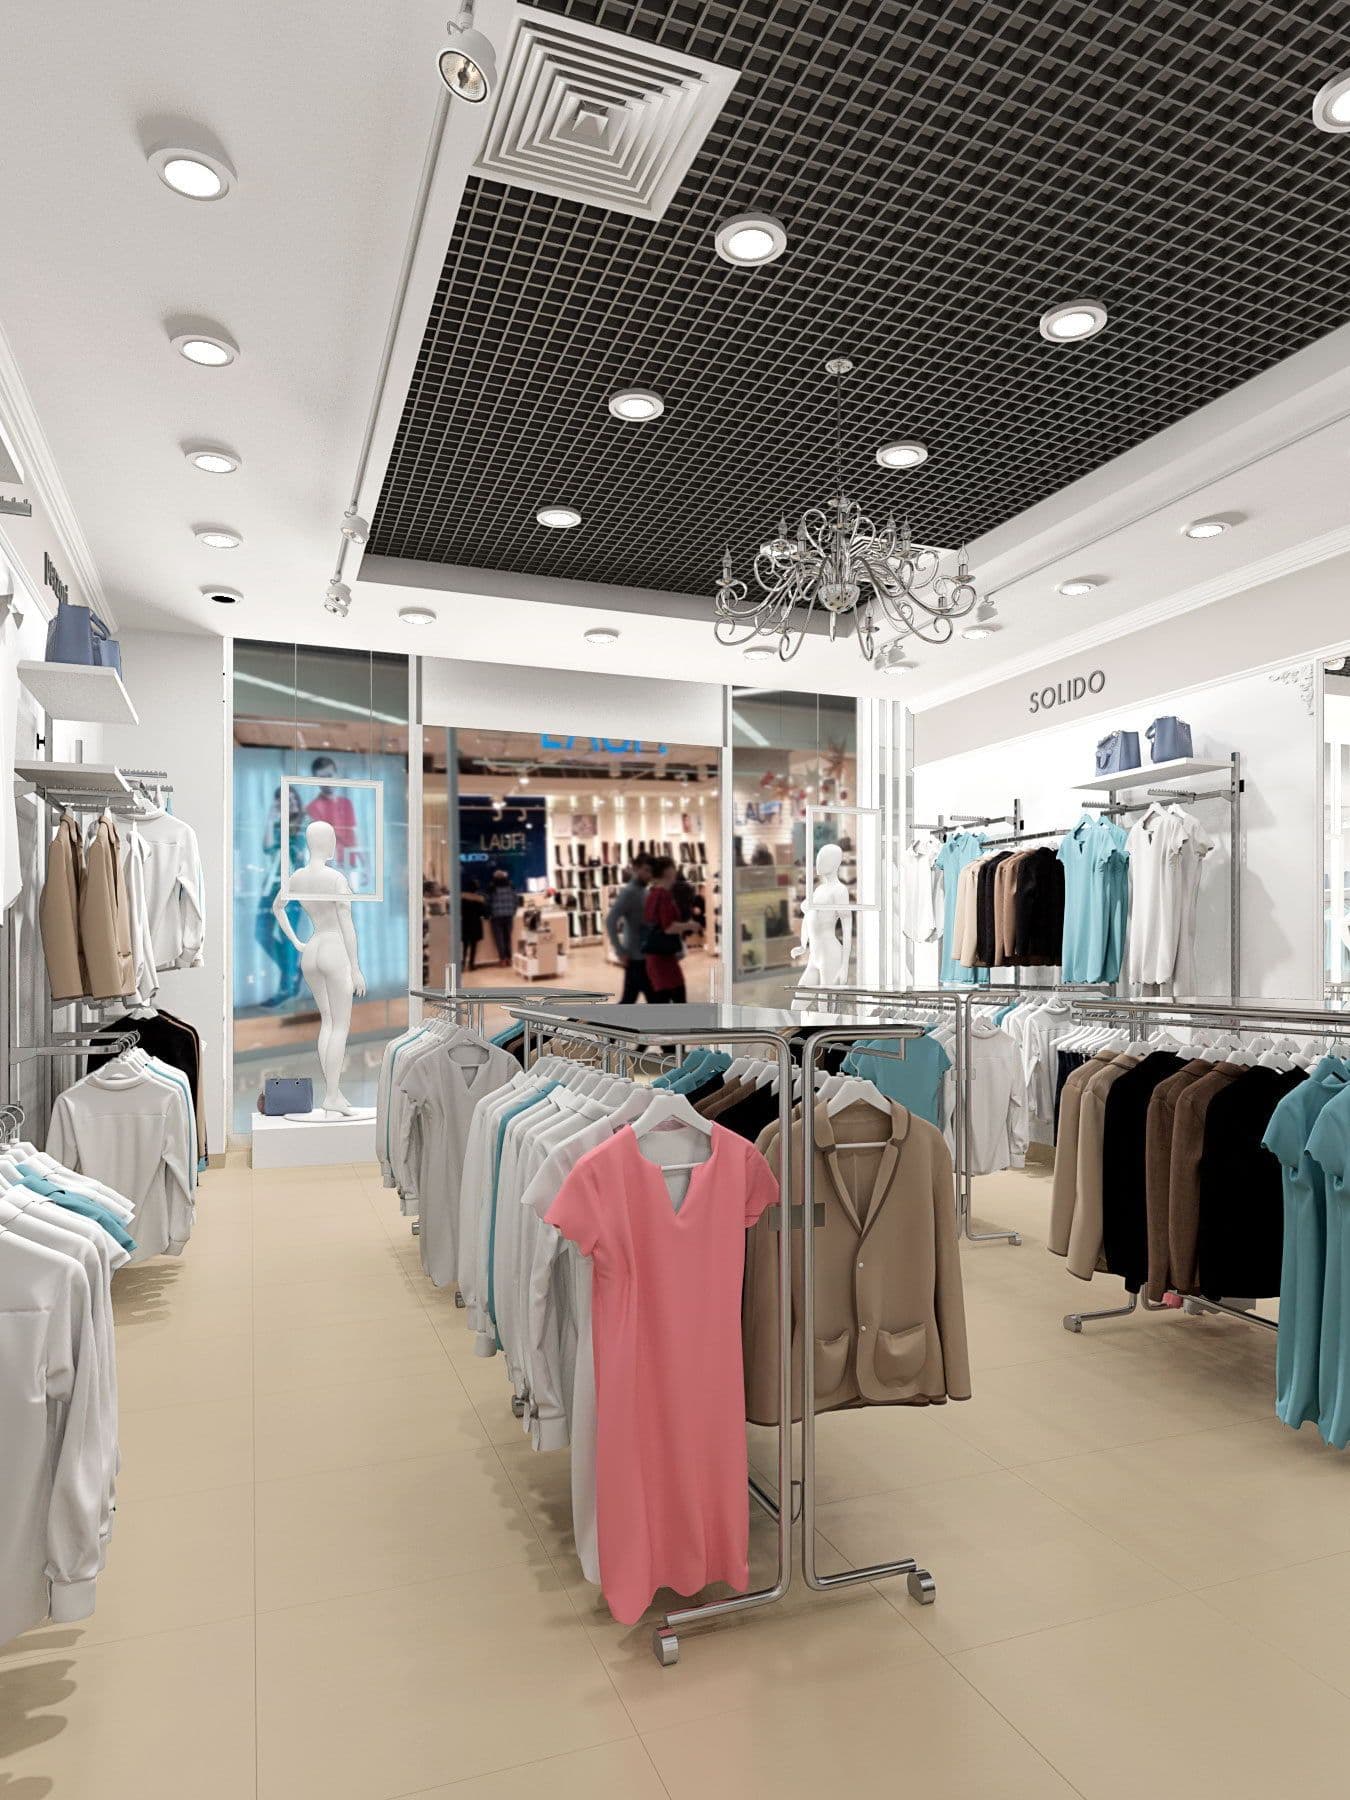 Дизайн магазина одежды в ТЦ Тау Галерея в легком классическом стиле, в светлых тонах, с большой люстрой и зеркалами, вид со стороны витрины, общий вид 3